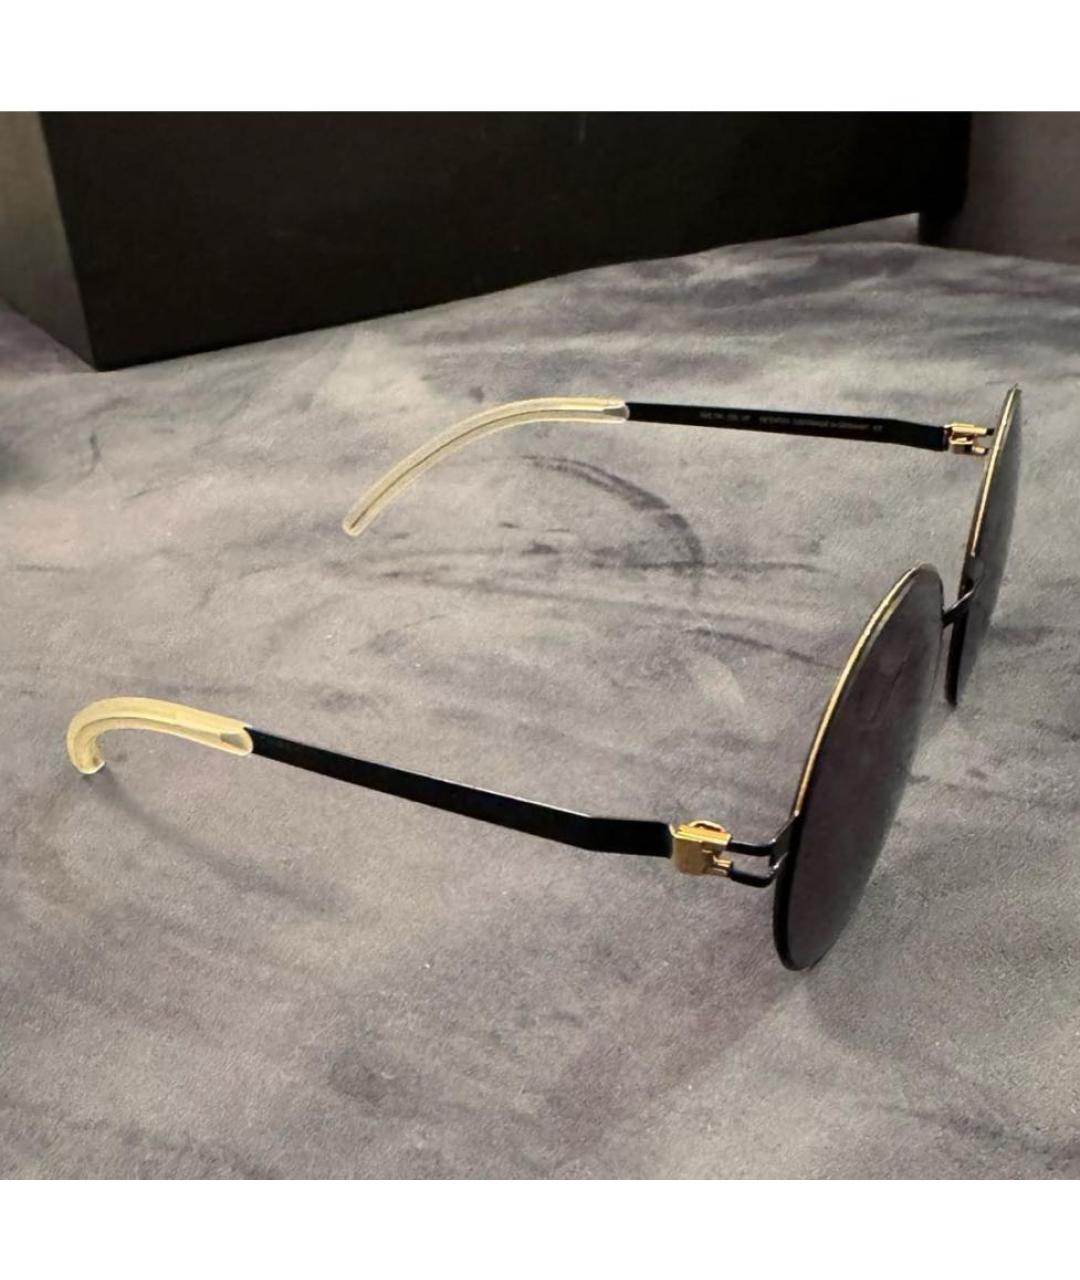 MYKITA Золотые металлические солнцезащитные очки, фото 7